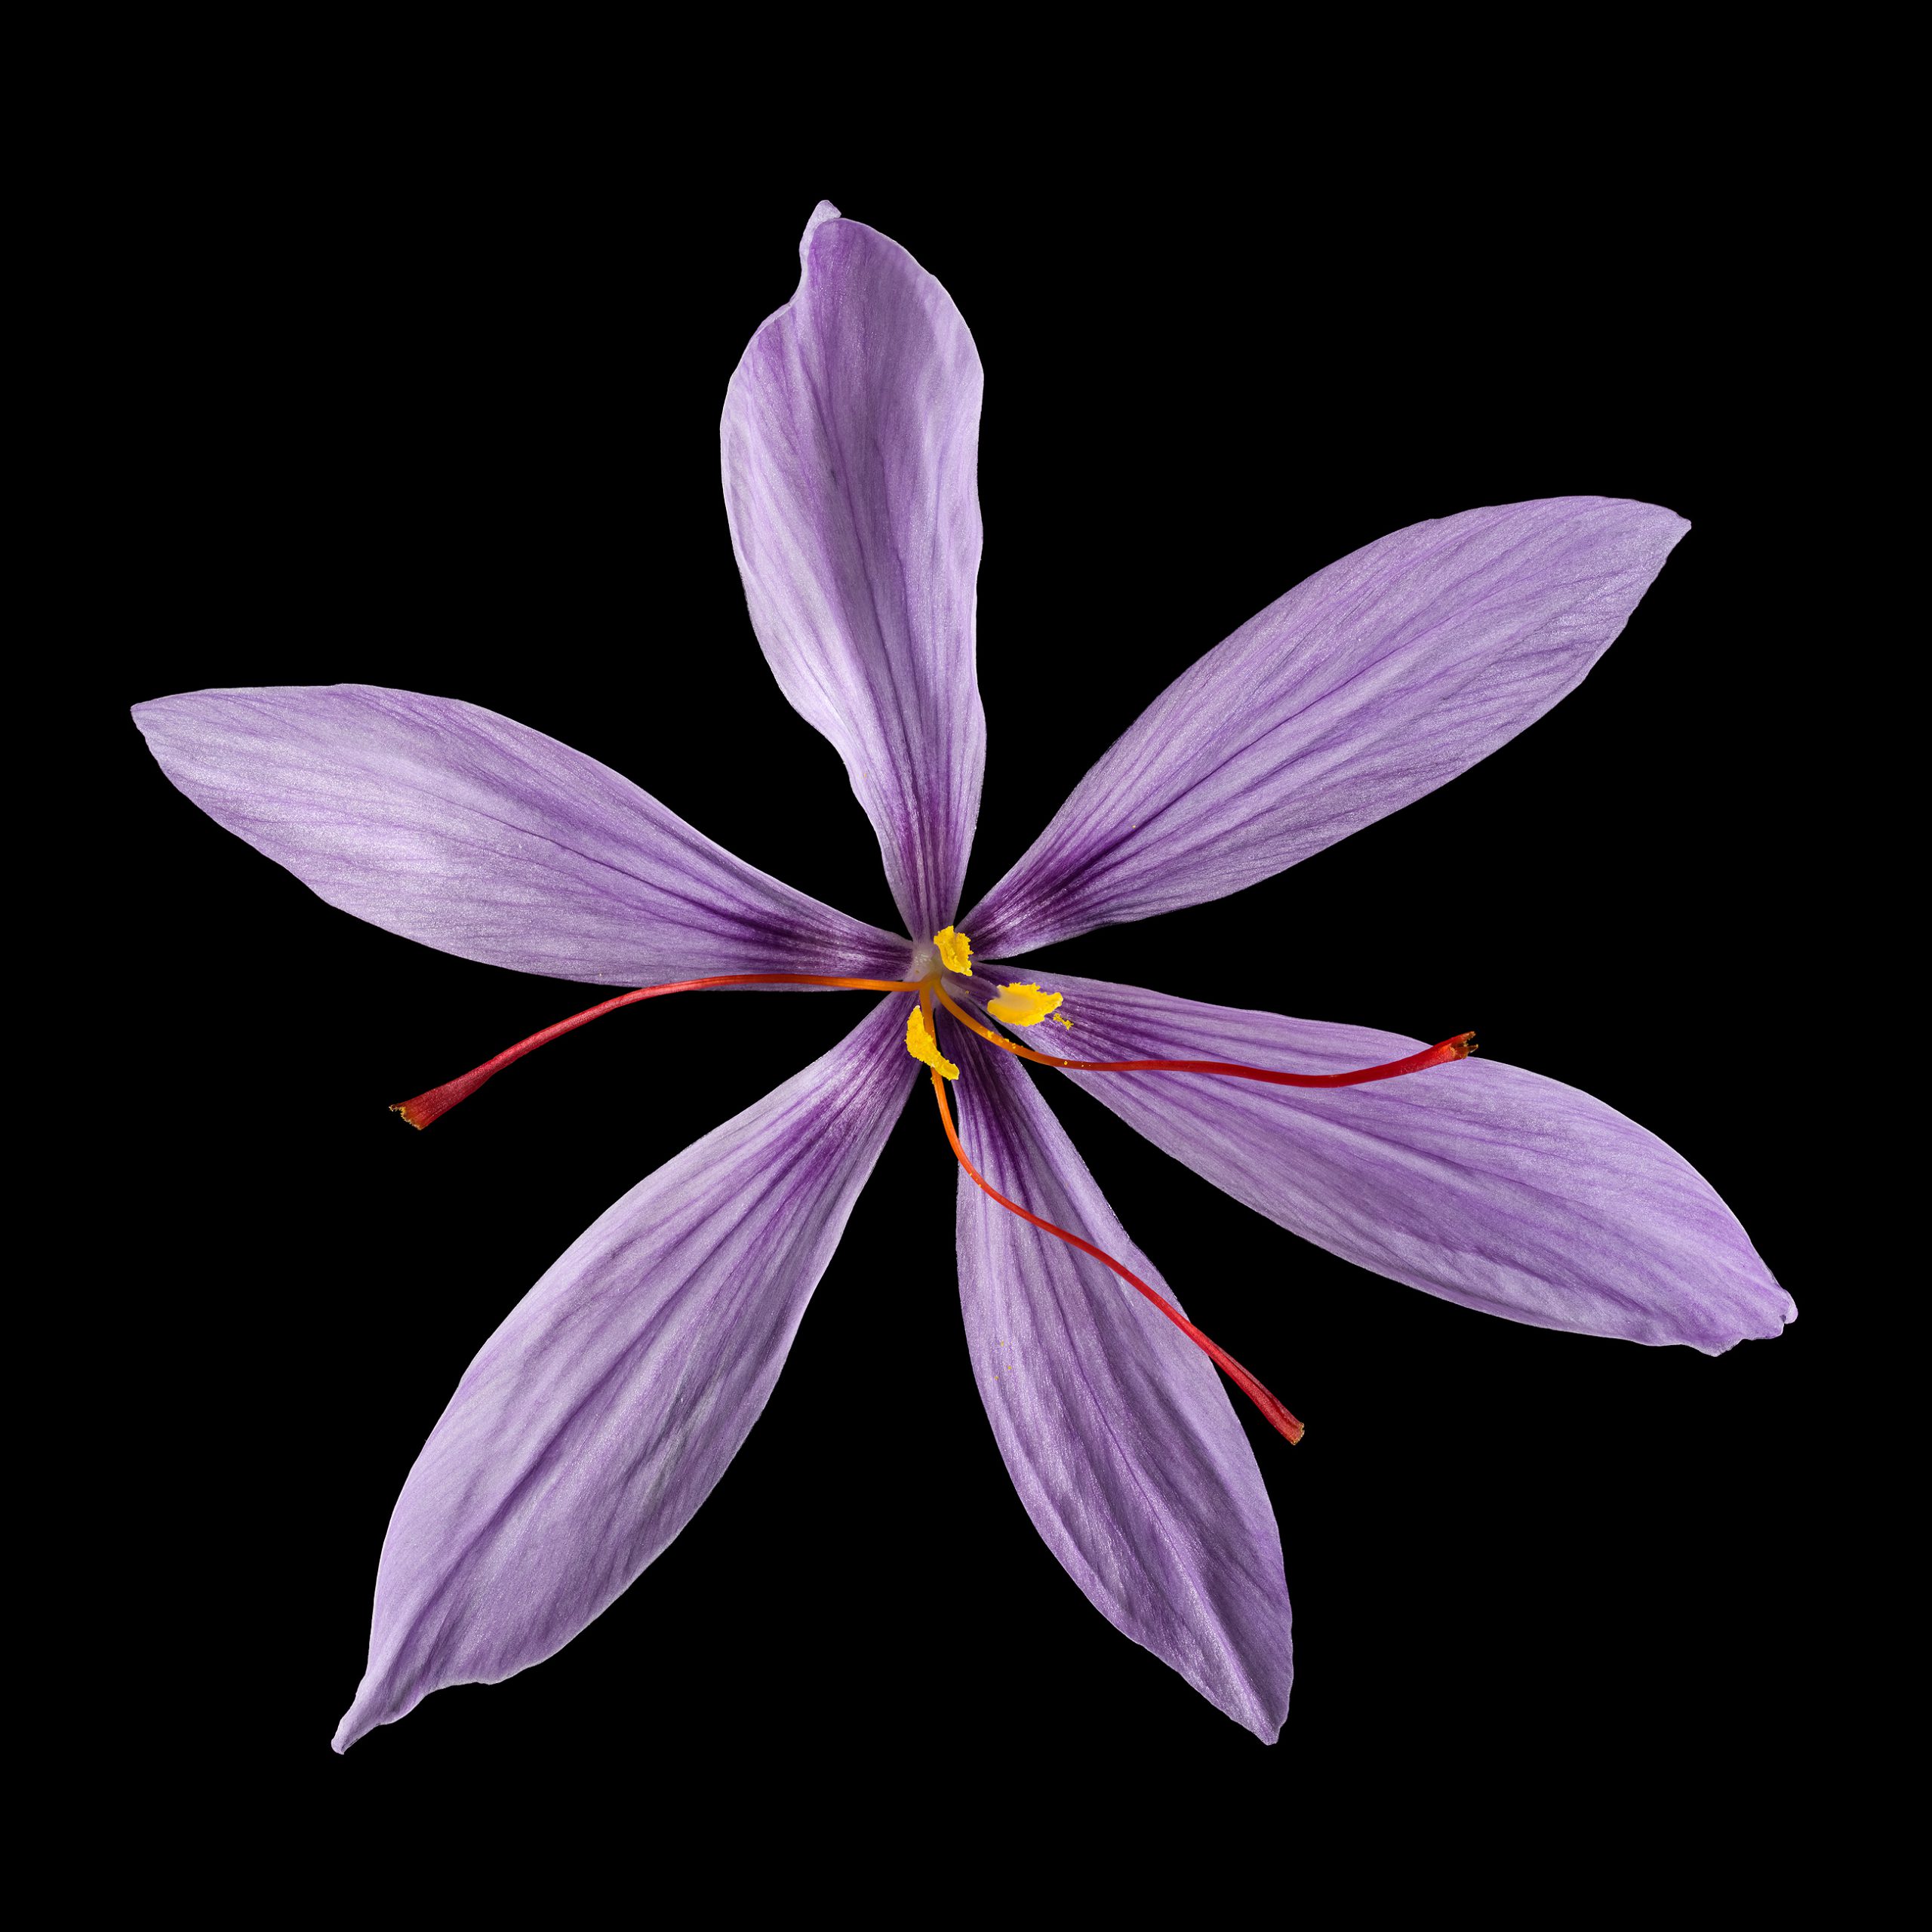 Saffron: Crocus sativus